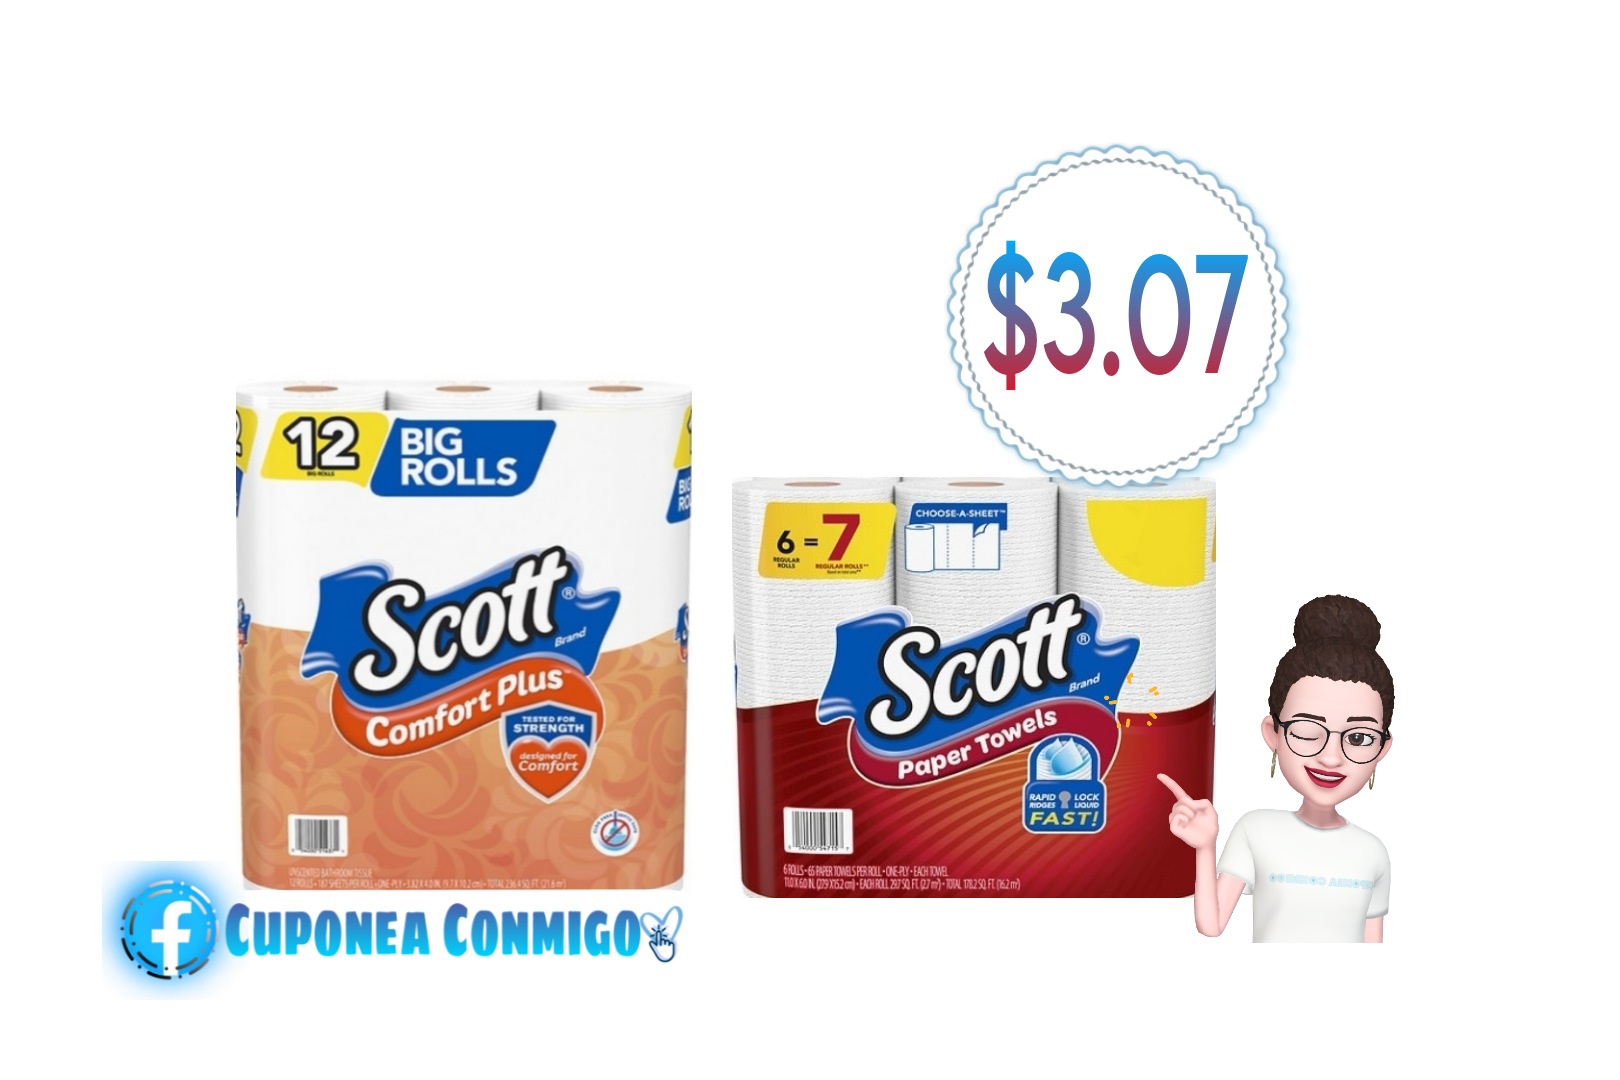 super-oferta-en-scott-toilet-paper-scott-paper-towels-3-07-cuponea-conmigo